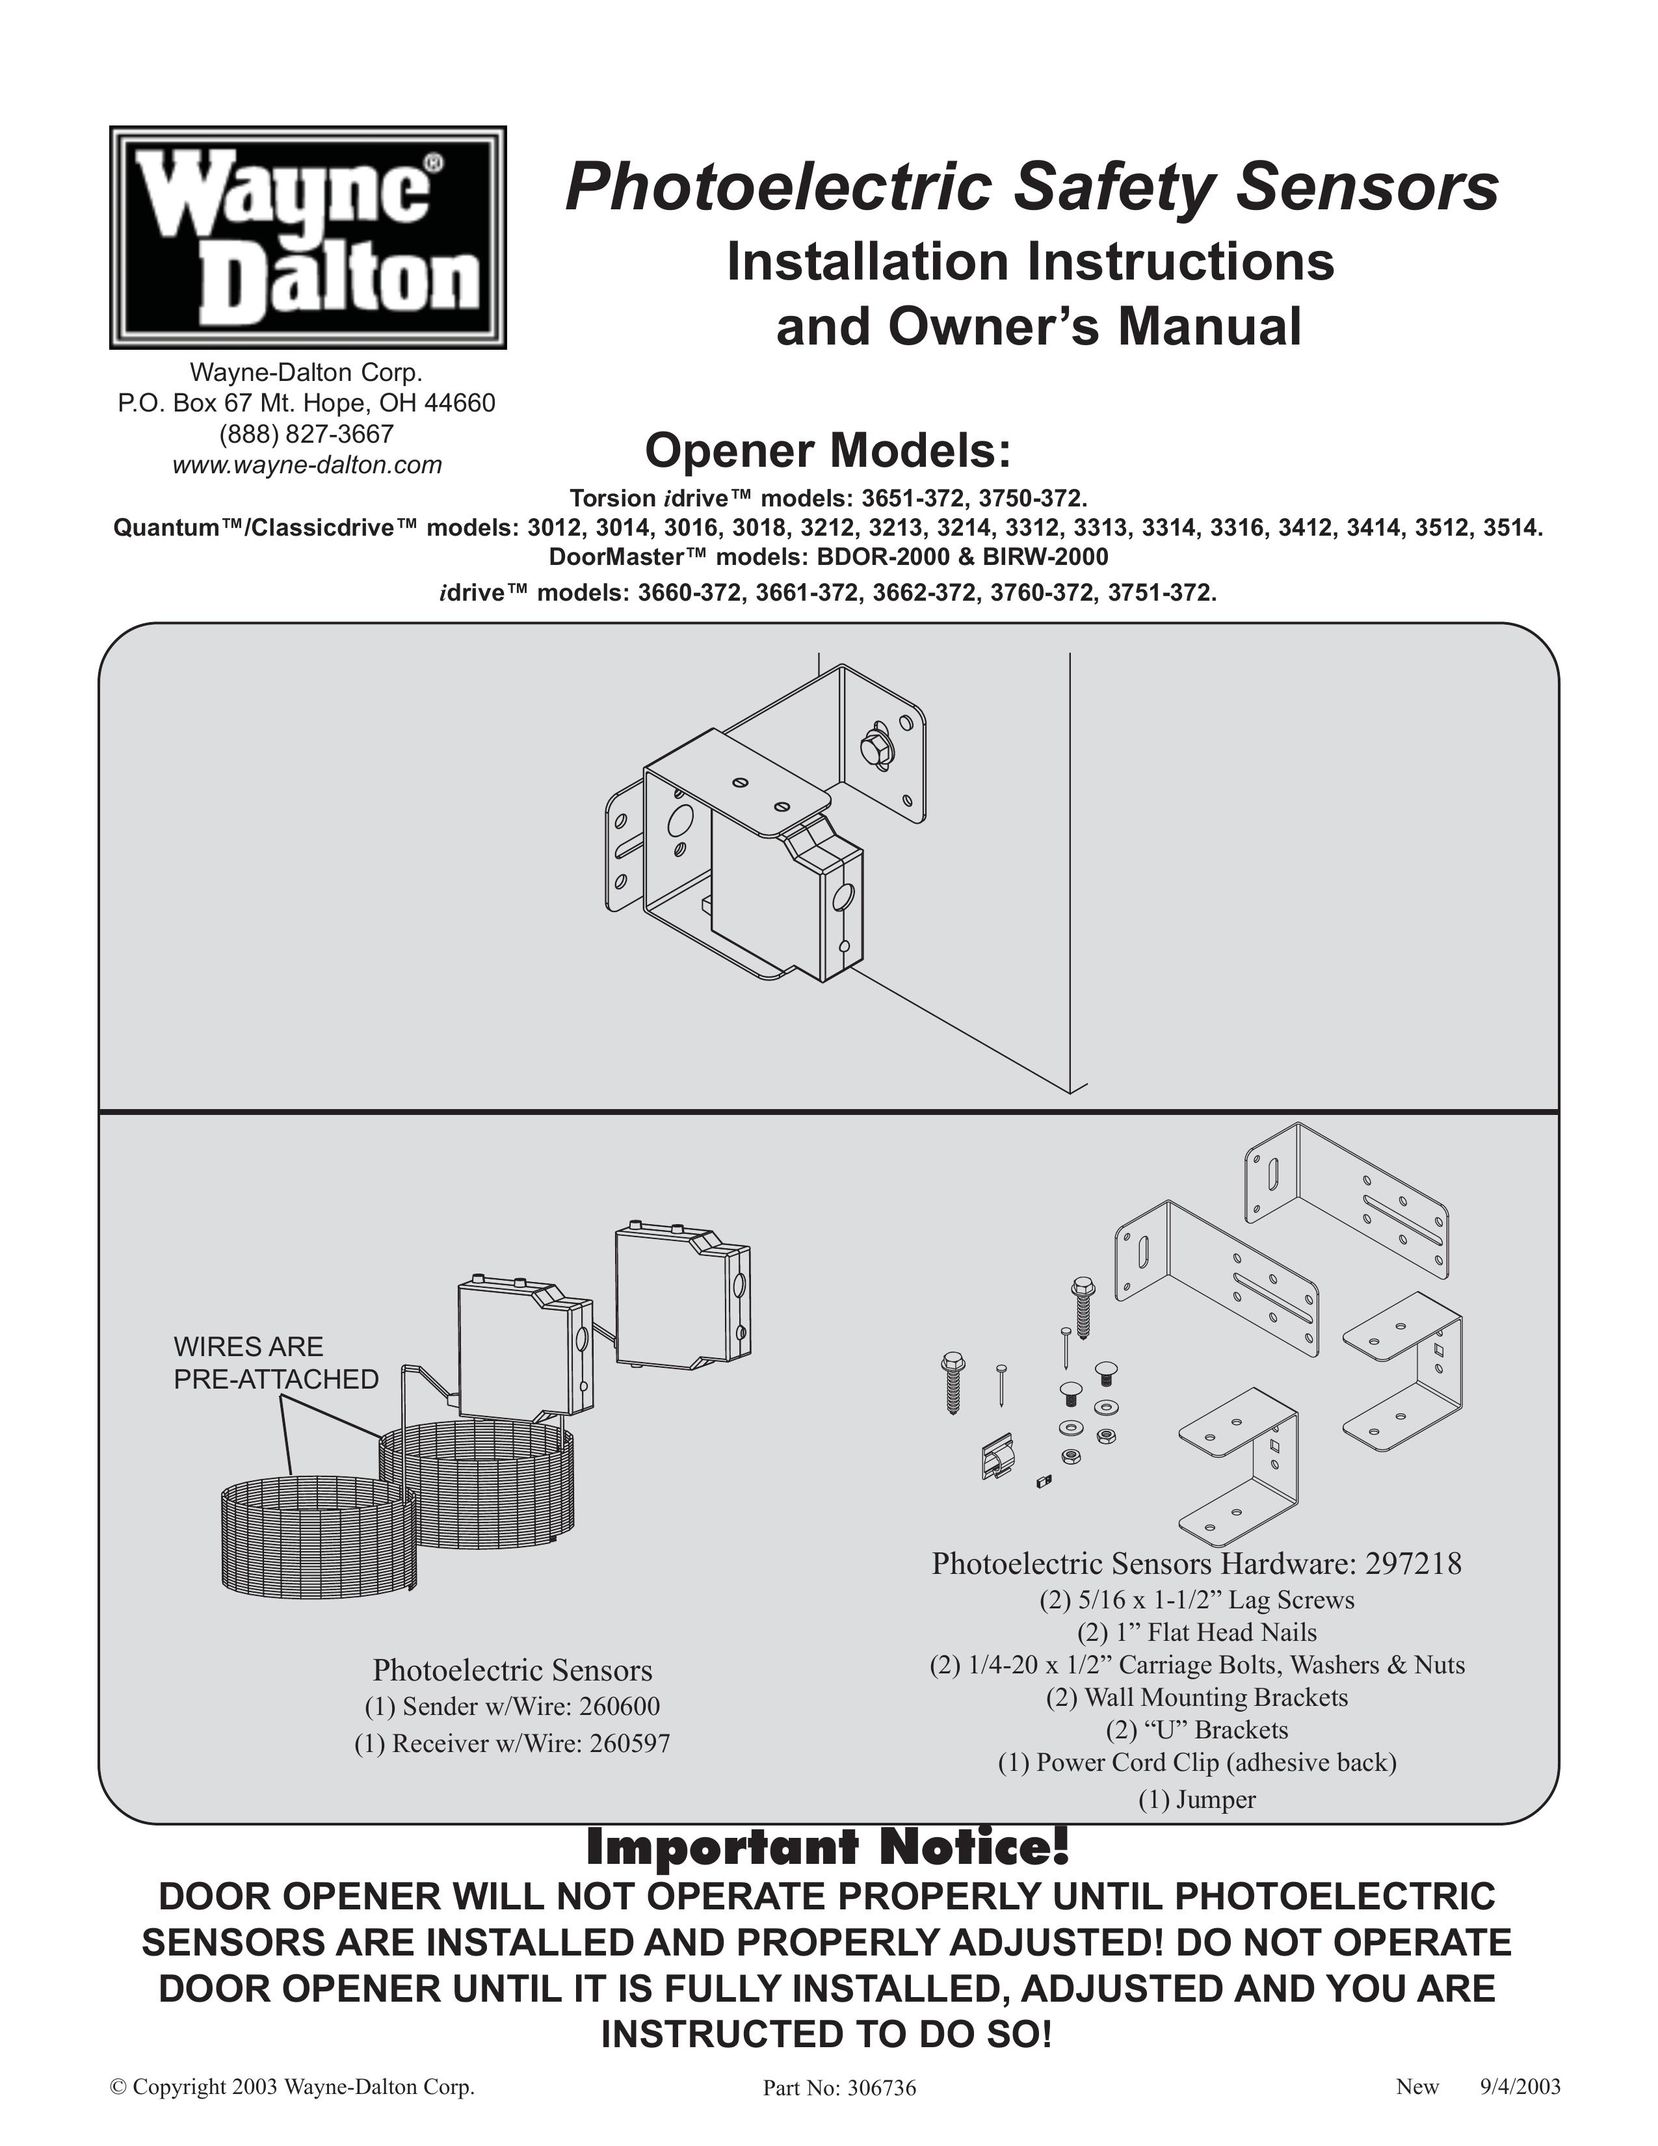 Wayne-Dalton 3012 Garage Door Opener User Manual